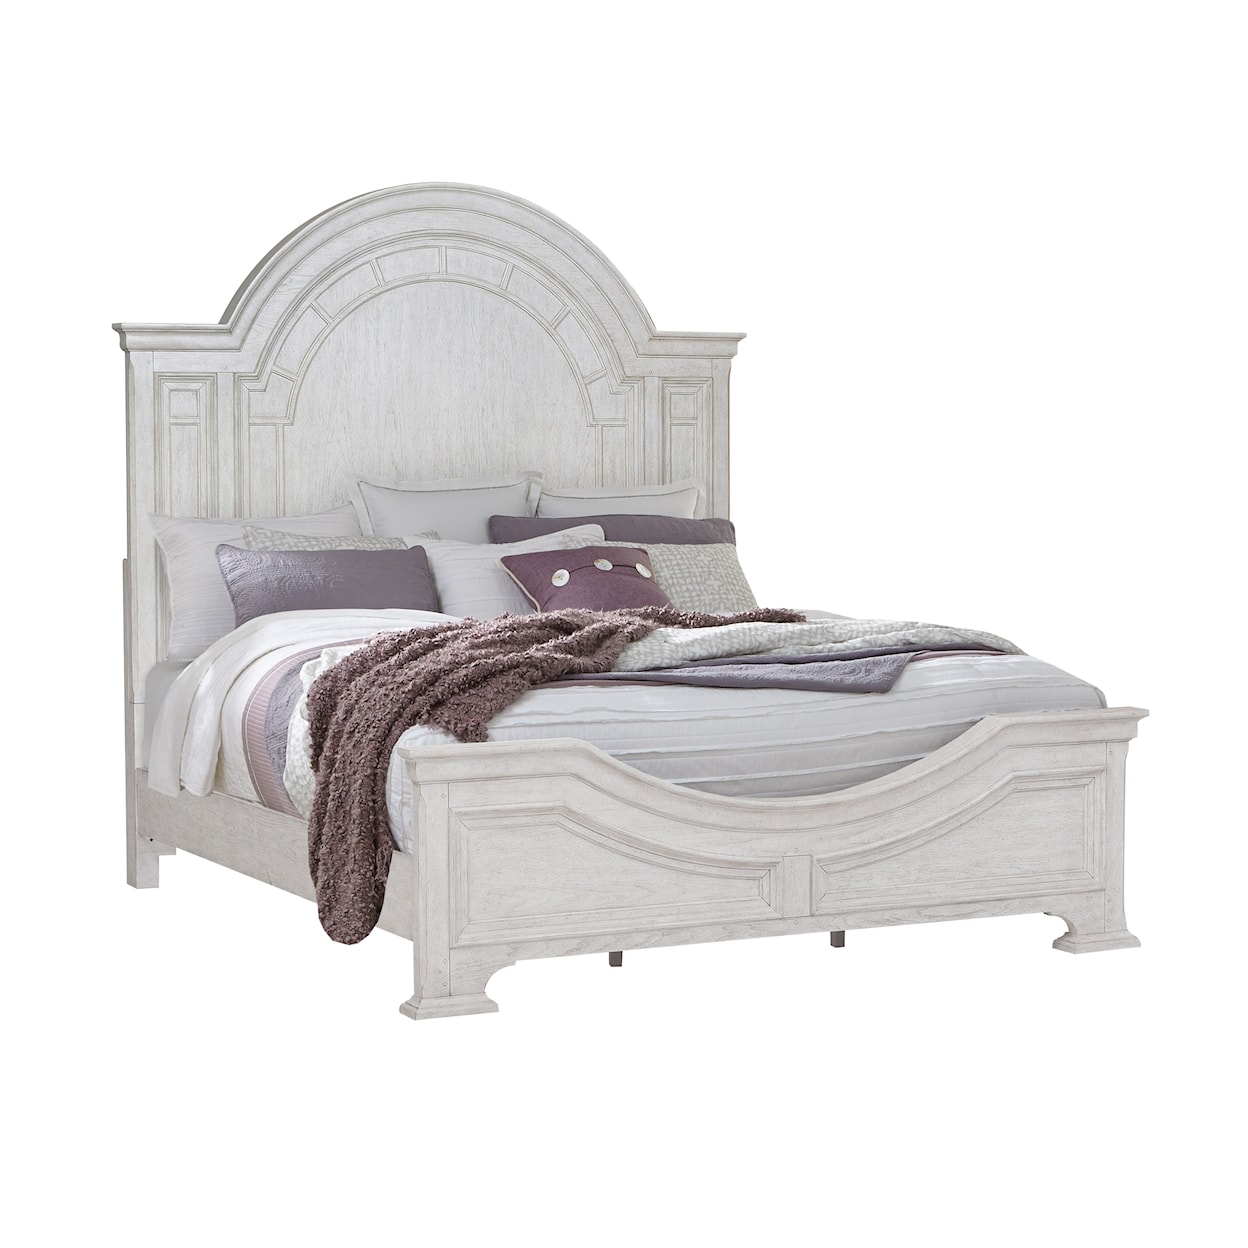 Pulaski Furniture Glendale Queen Bed